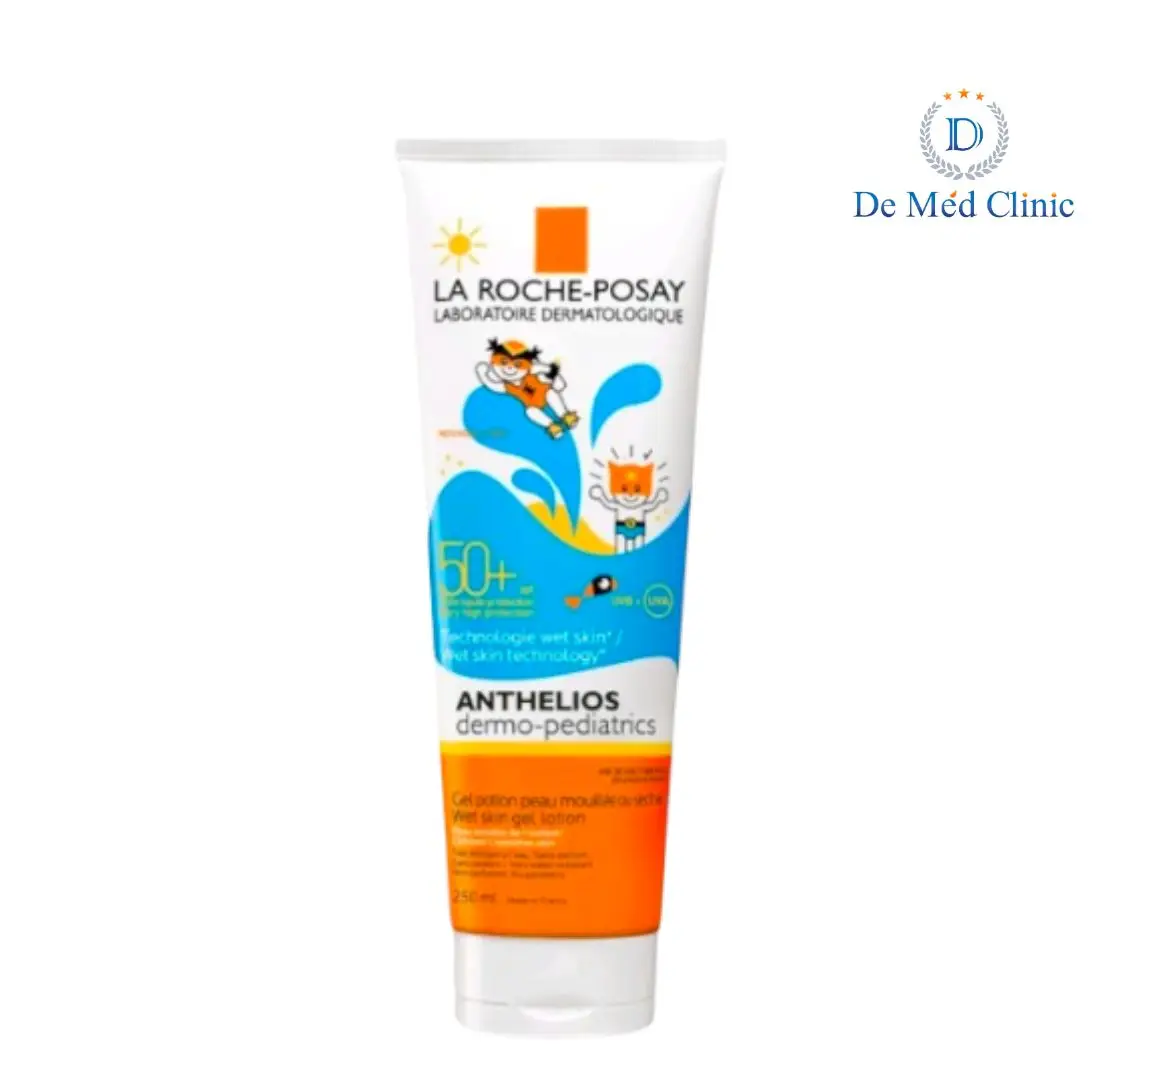 Anthelios Dermo-Pediatrics Wet Skin Gel Lotion SPF50+ for Children 250 ml